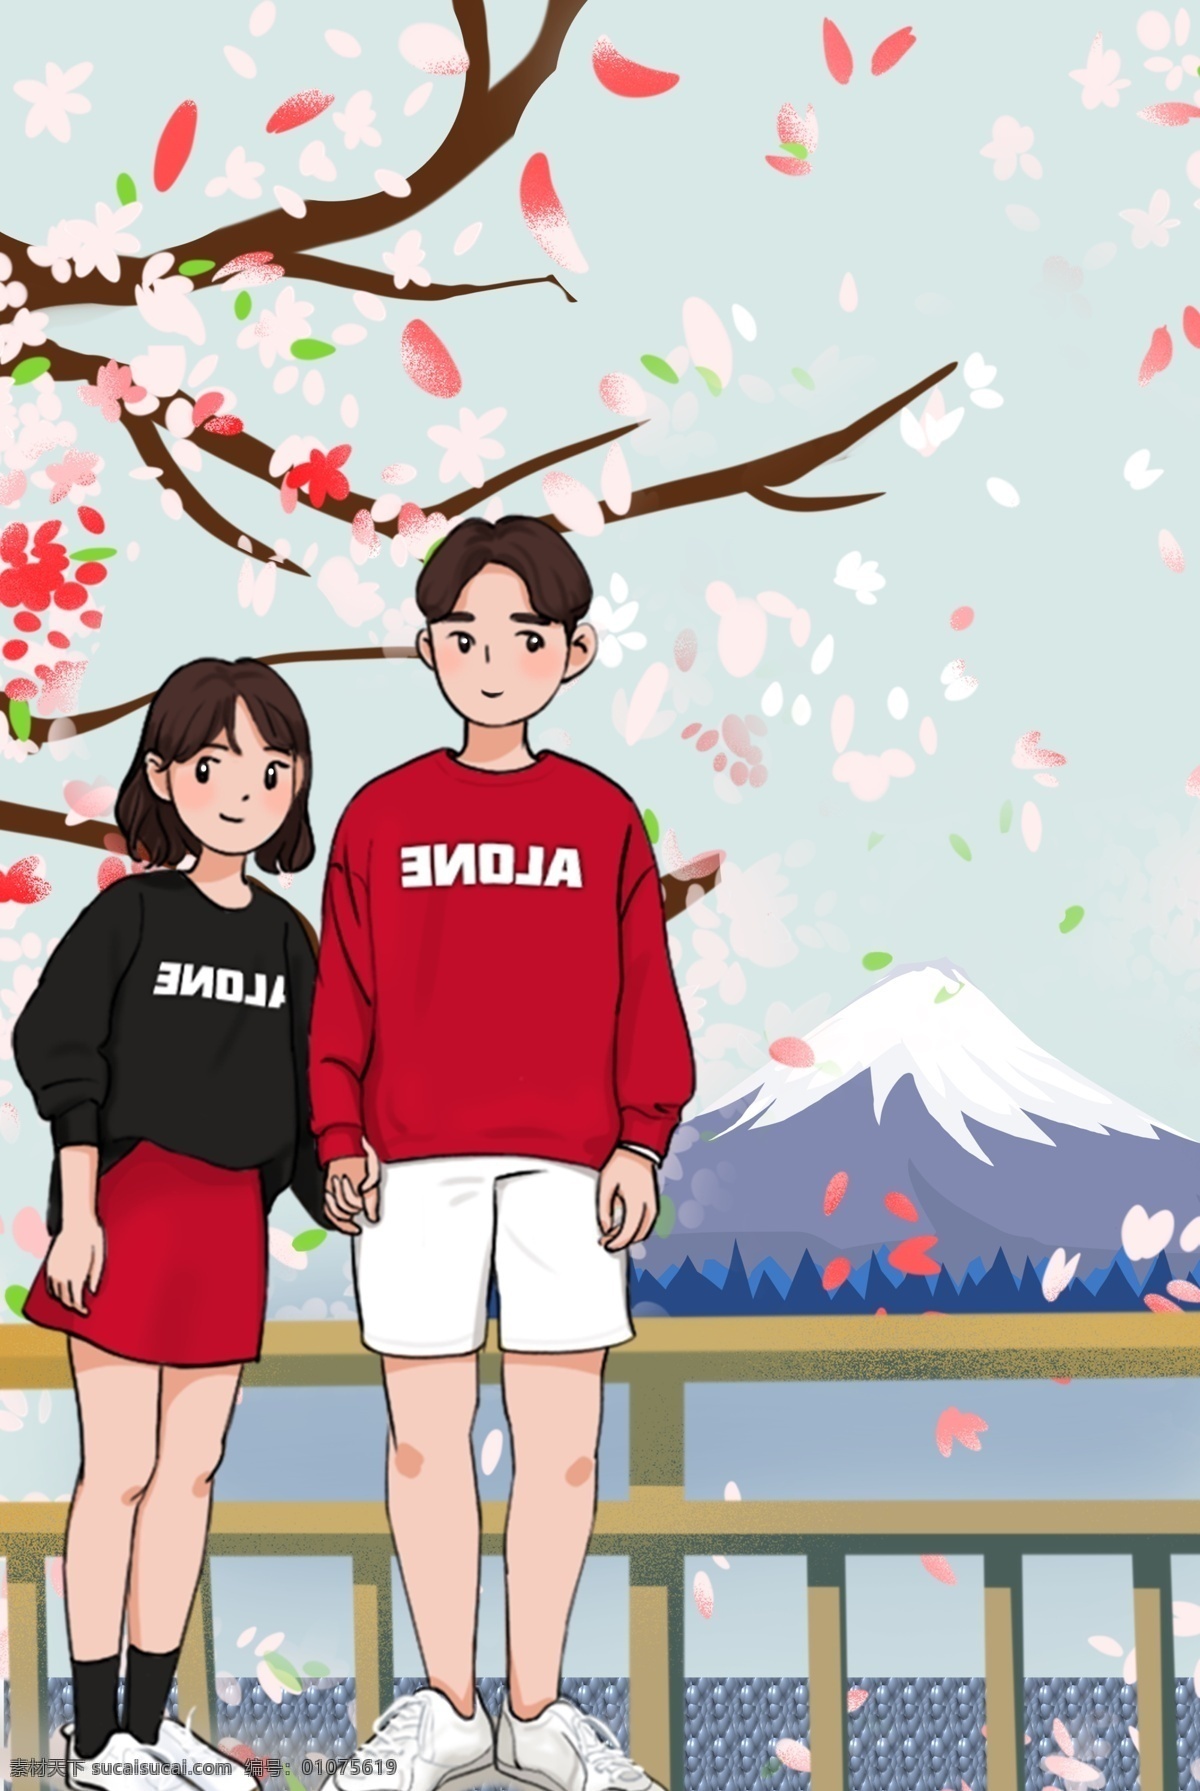 日本 旅行 风景 优美 外国 国家 旅游 出游 樱花 富士山 情侣 旅客 游山玩水 五一 五一长假